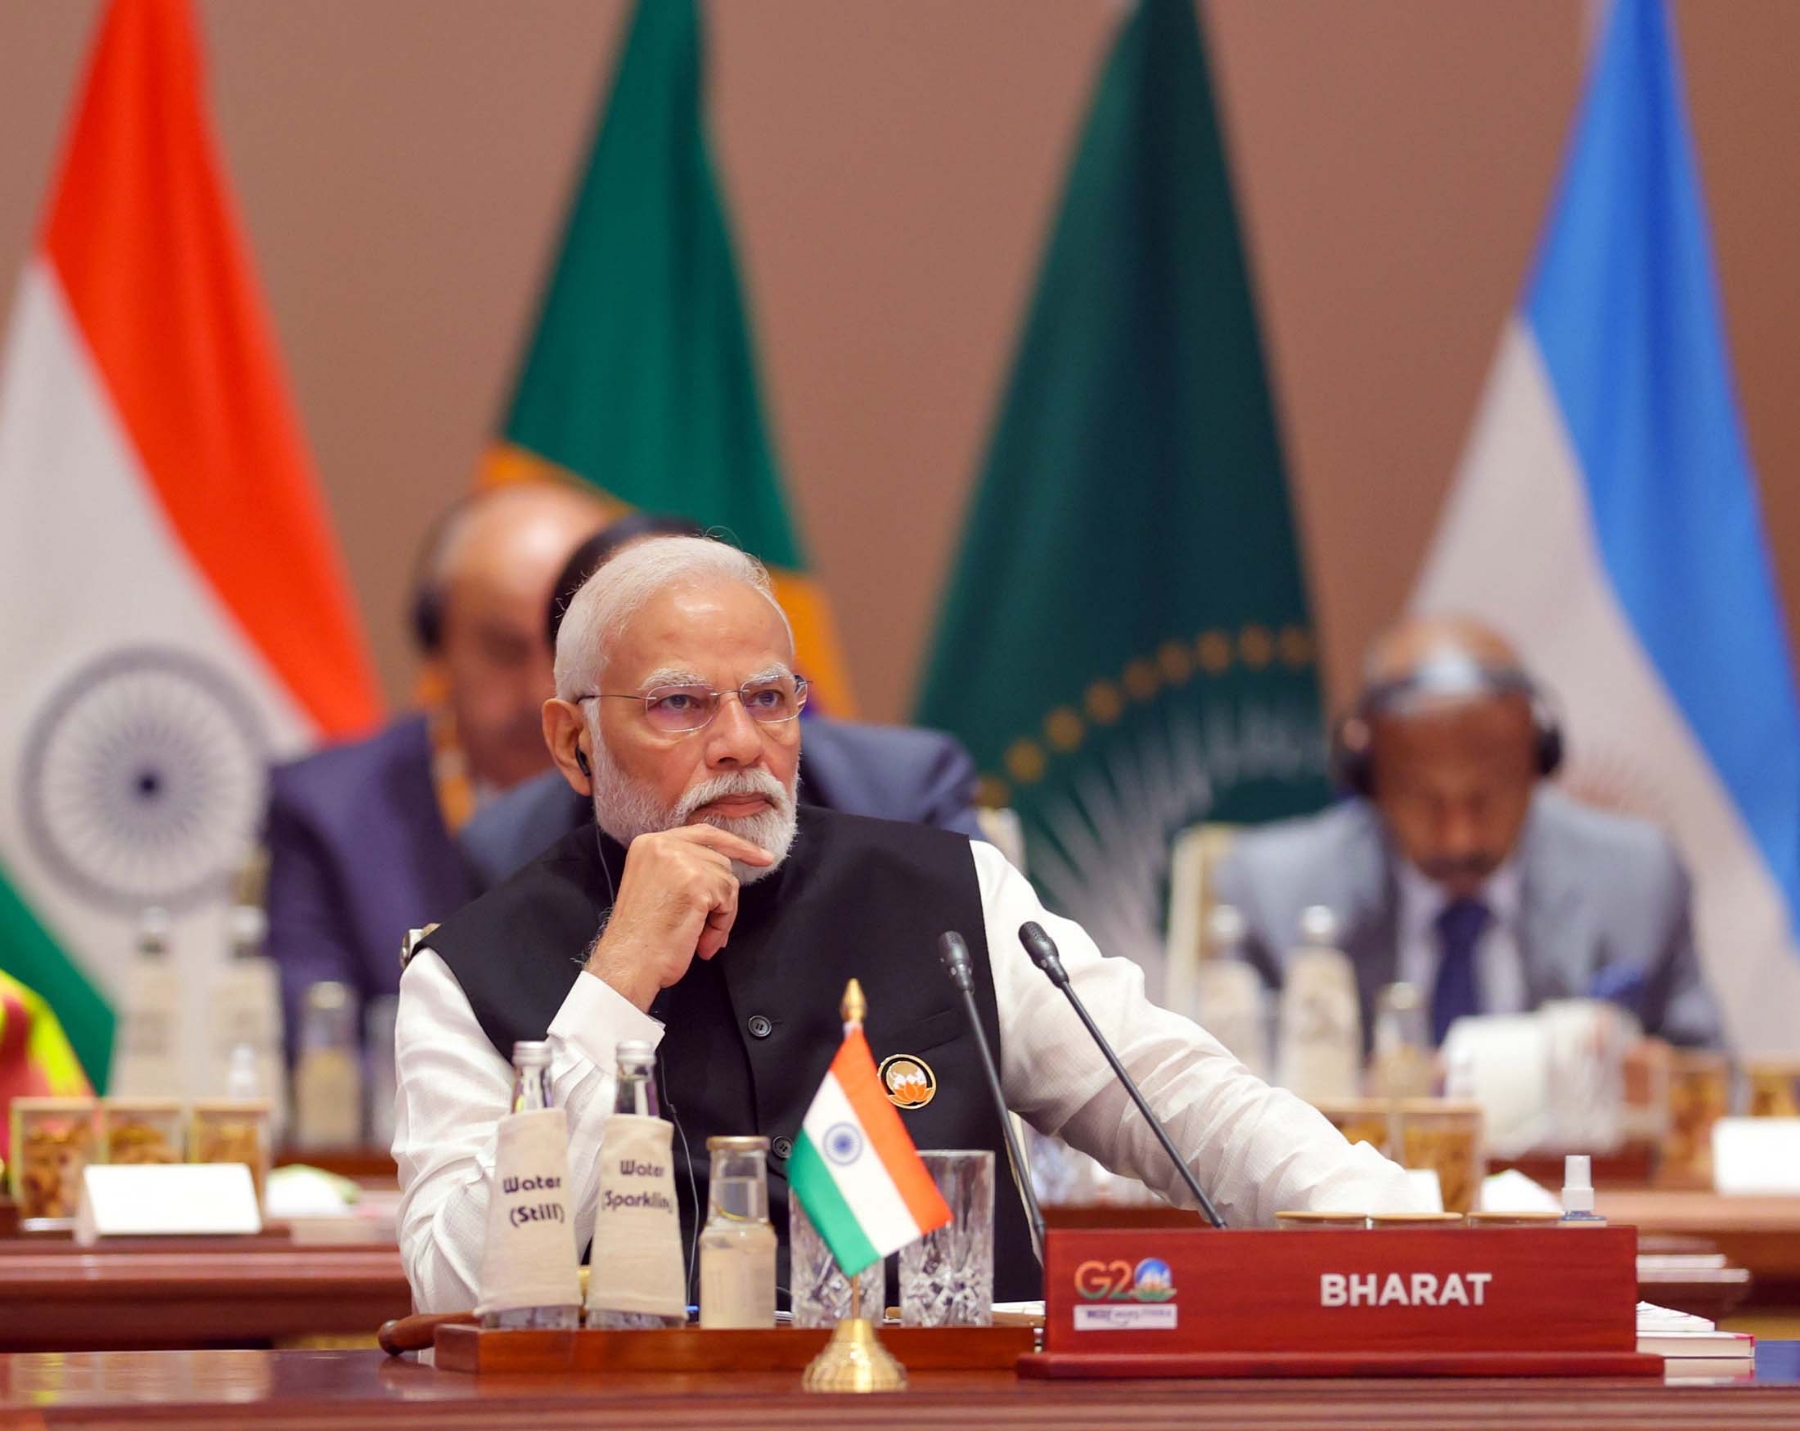 नई दिल्ली में 10 सितंबर 2023 को प्रगति मैदान में भारत मंडपम मे जी20 शिखर सम्मेलन को प्रधान मंत्री नरेन्द्र मोदी ने समापन समारोह को संबोधित करते हुए। हिन्दुस्थान समाचार/ फोटो गणेश बिष्ट